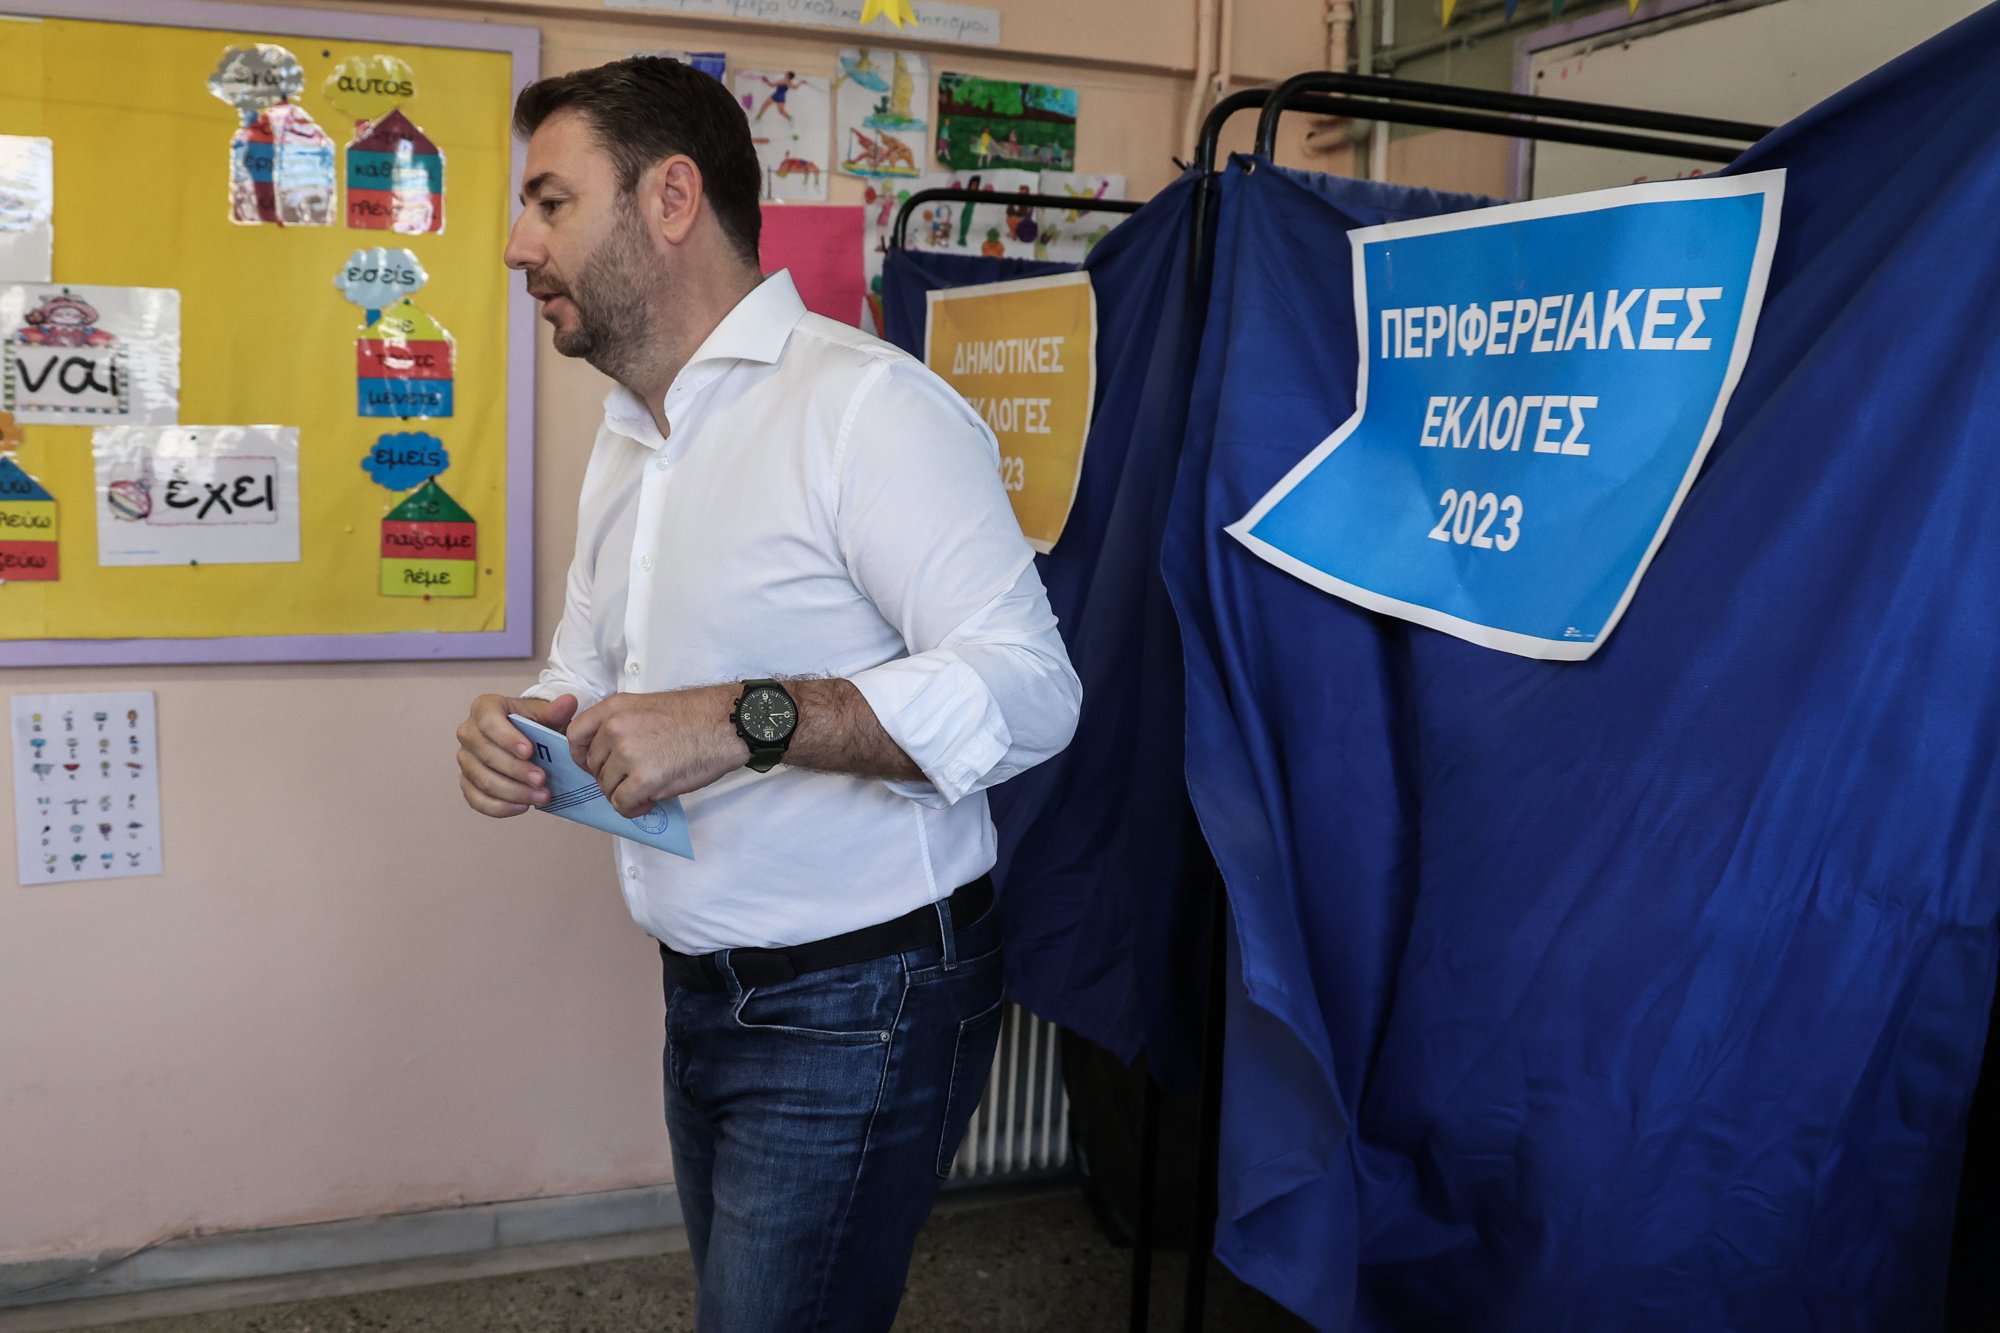 Νίκος Ανδρουλάκης: Δίνουμε την μάχη για να ηττηθεί το συγκεντρωτικό μοντέλο αυτοδιοίκησης Μητσοτάκη